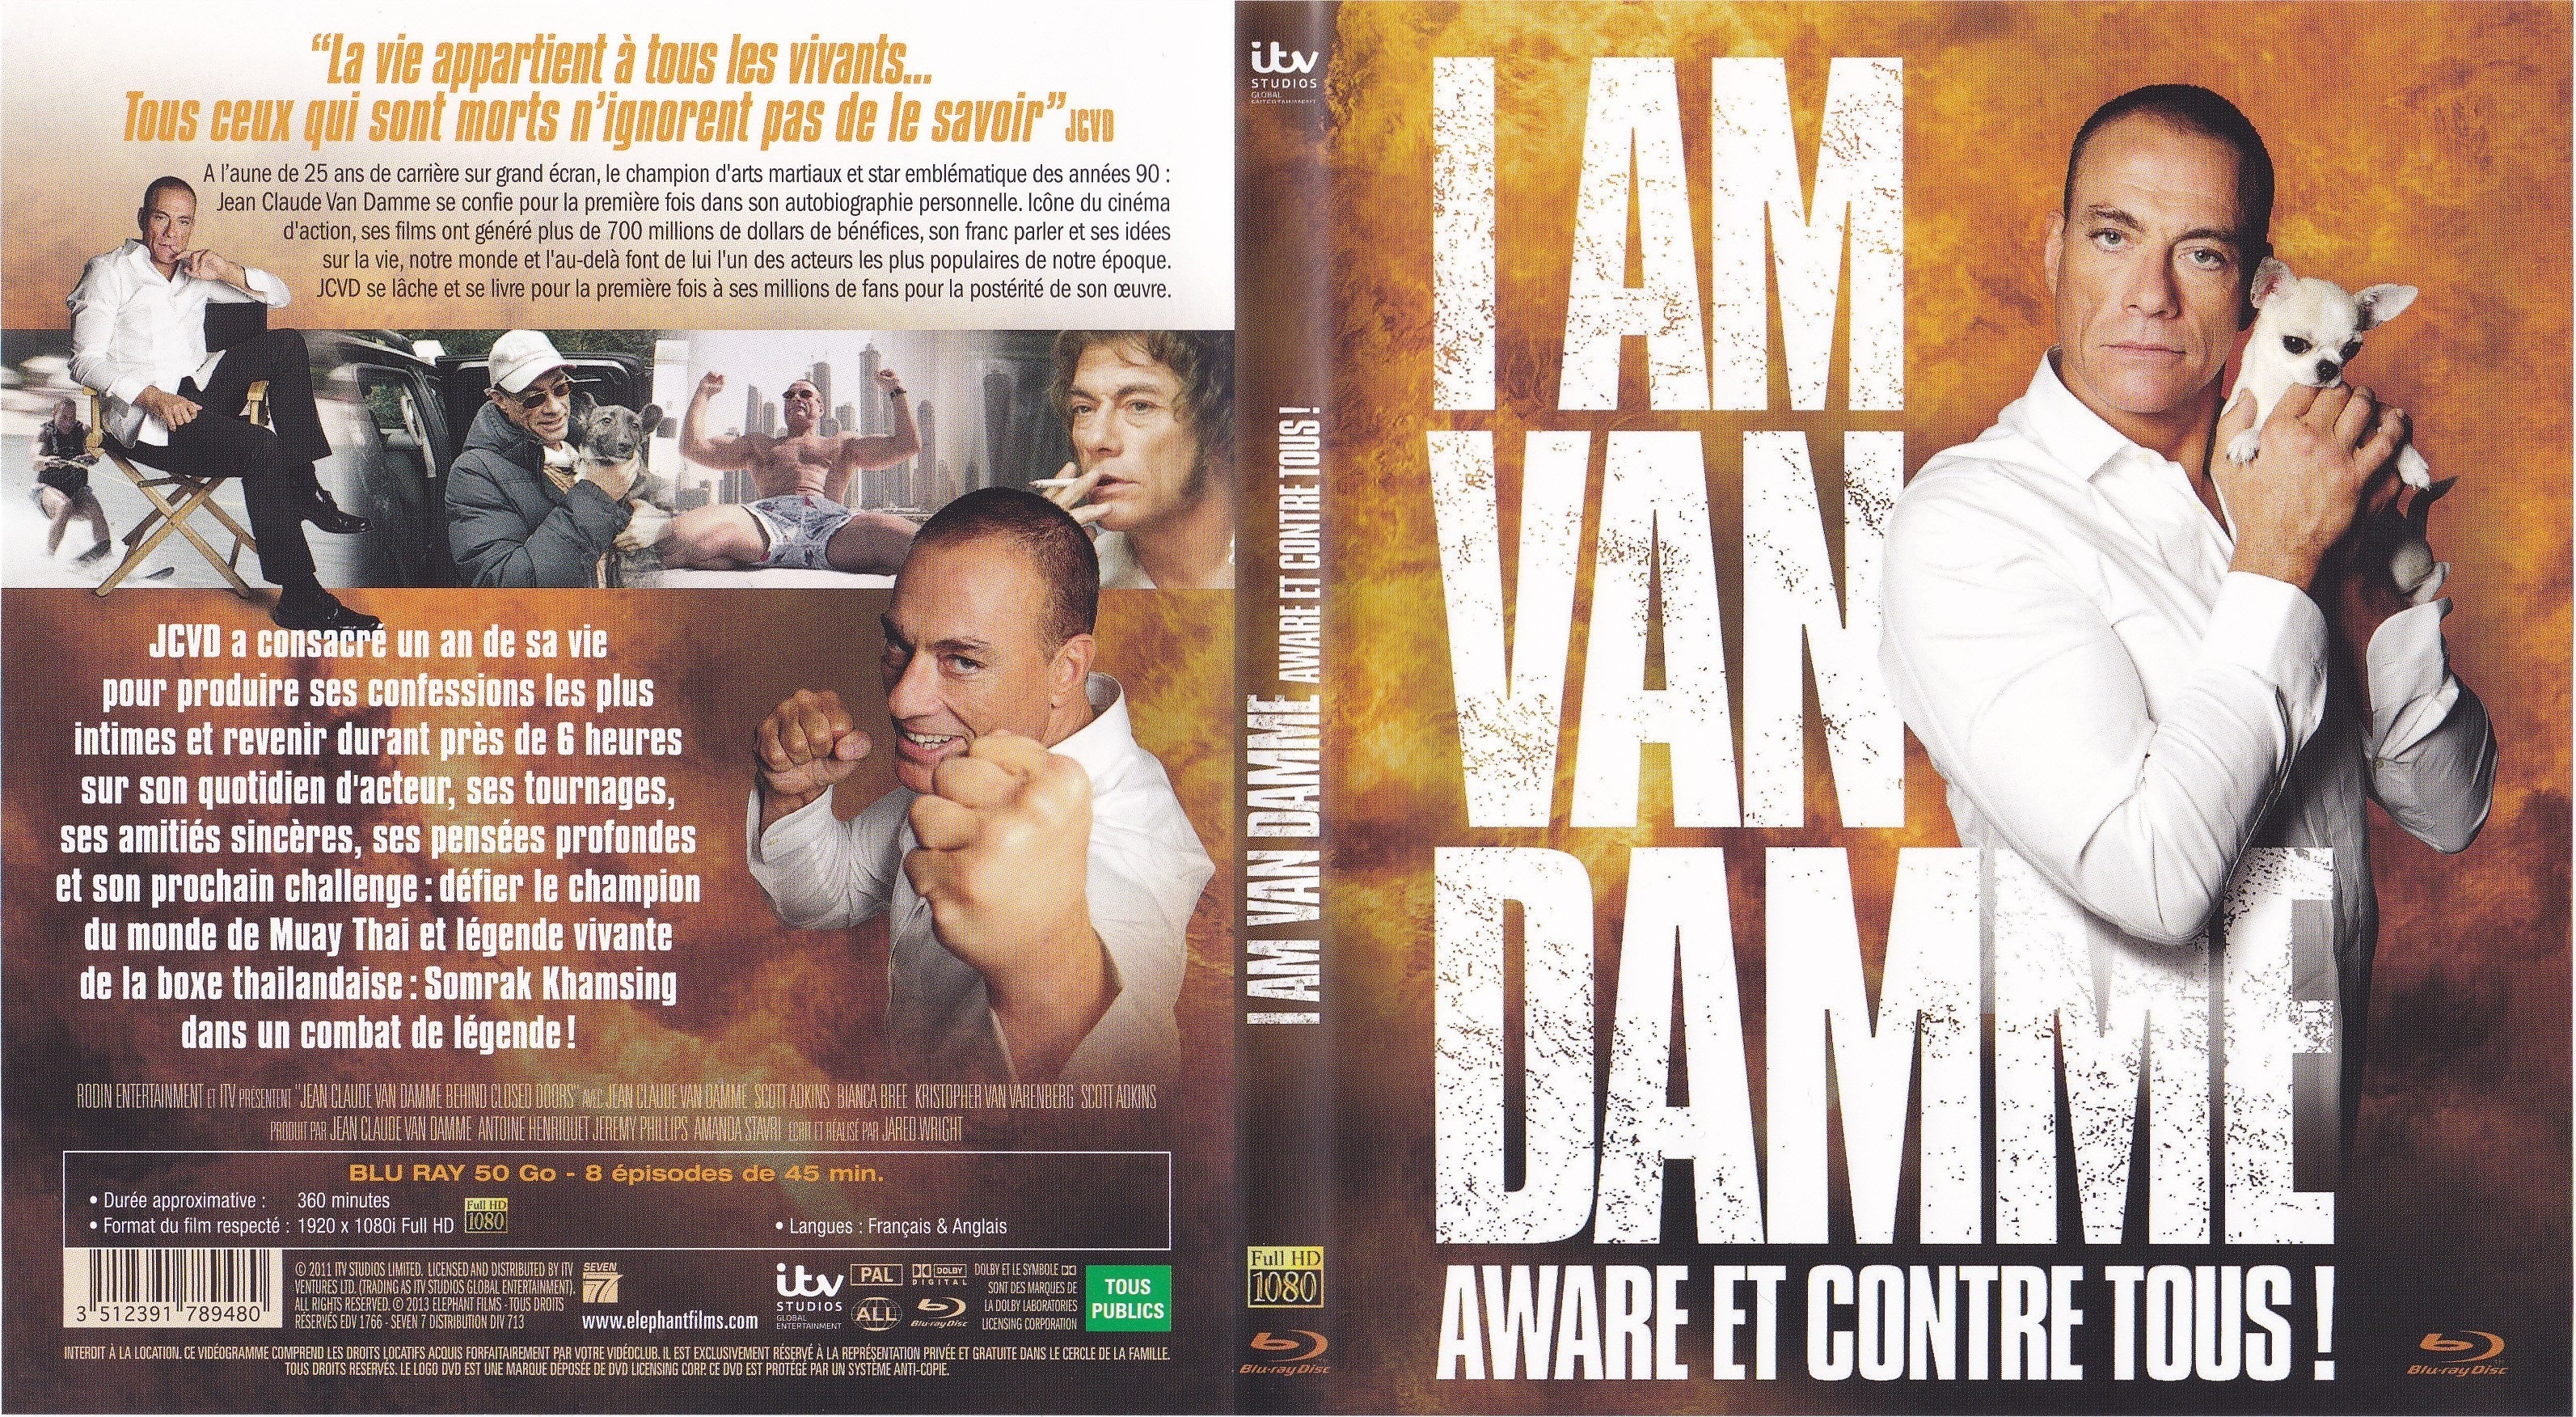 Jaquette DVD I am Van Damme Aware et contre tous (BLU-RAY)